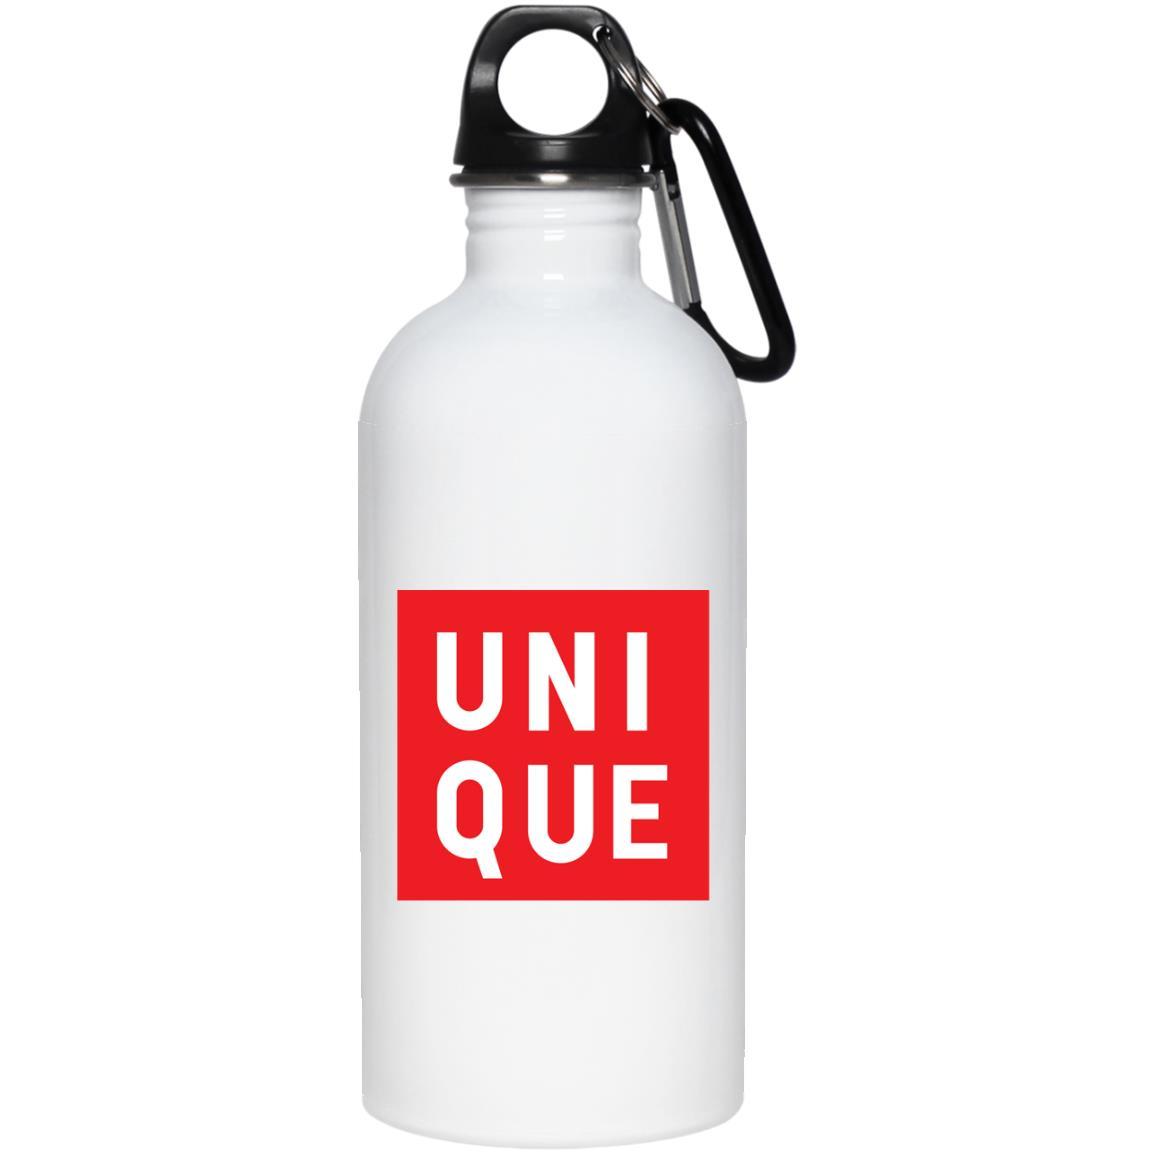 Unique (20oz Steel Water Bottle) - SDG Clothing